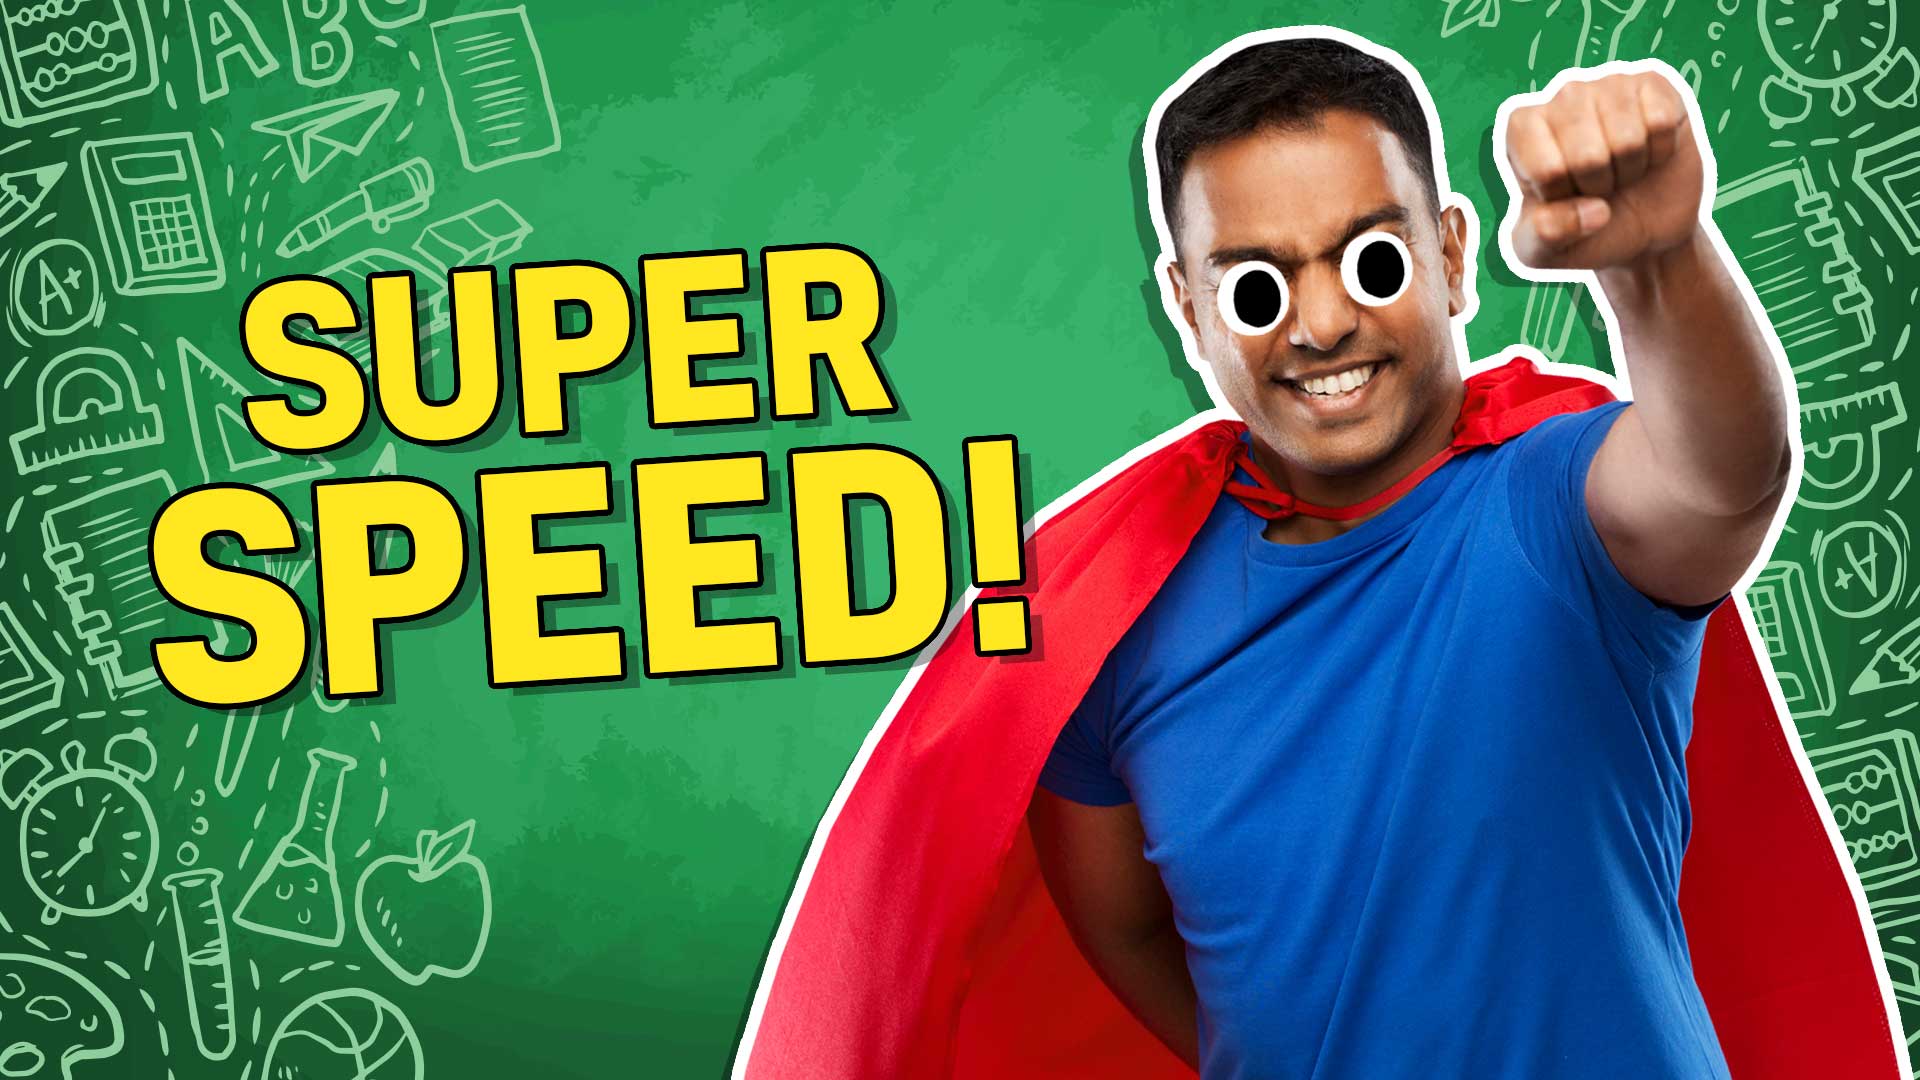 Result: Super speed